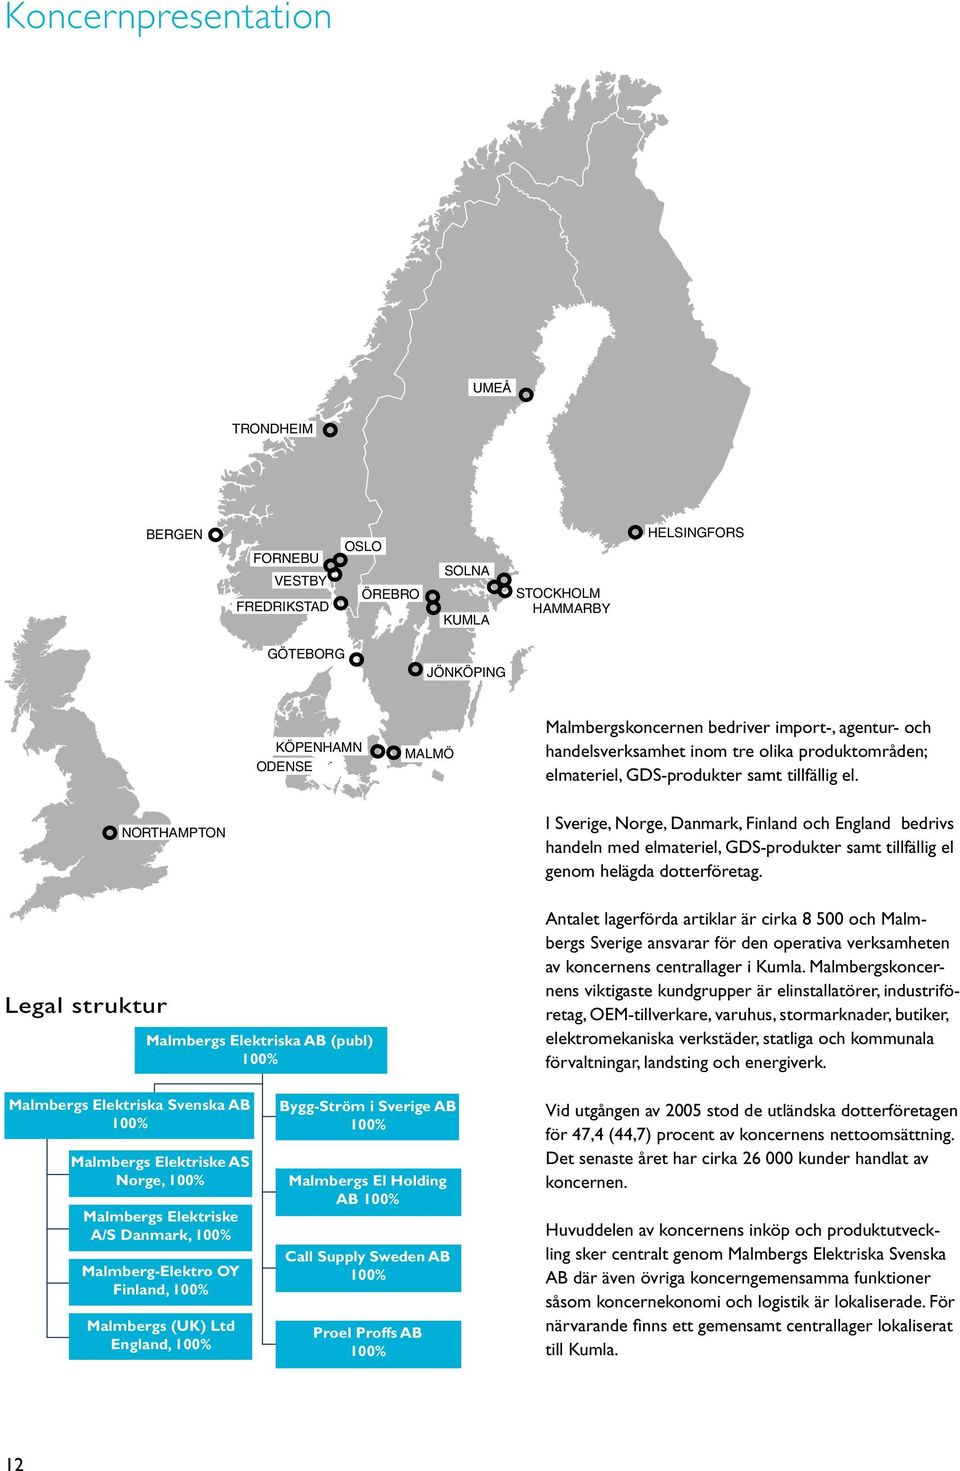 Legal struktur NORTHAMPTON Malmbergs Elektriska AB (publ) 100% I Sverige, Norge, Danmark, Finland och England bedrivs handeln med elmateriel, GDS-produkter samt tillfällig el genom helägda